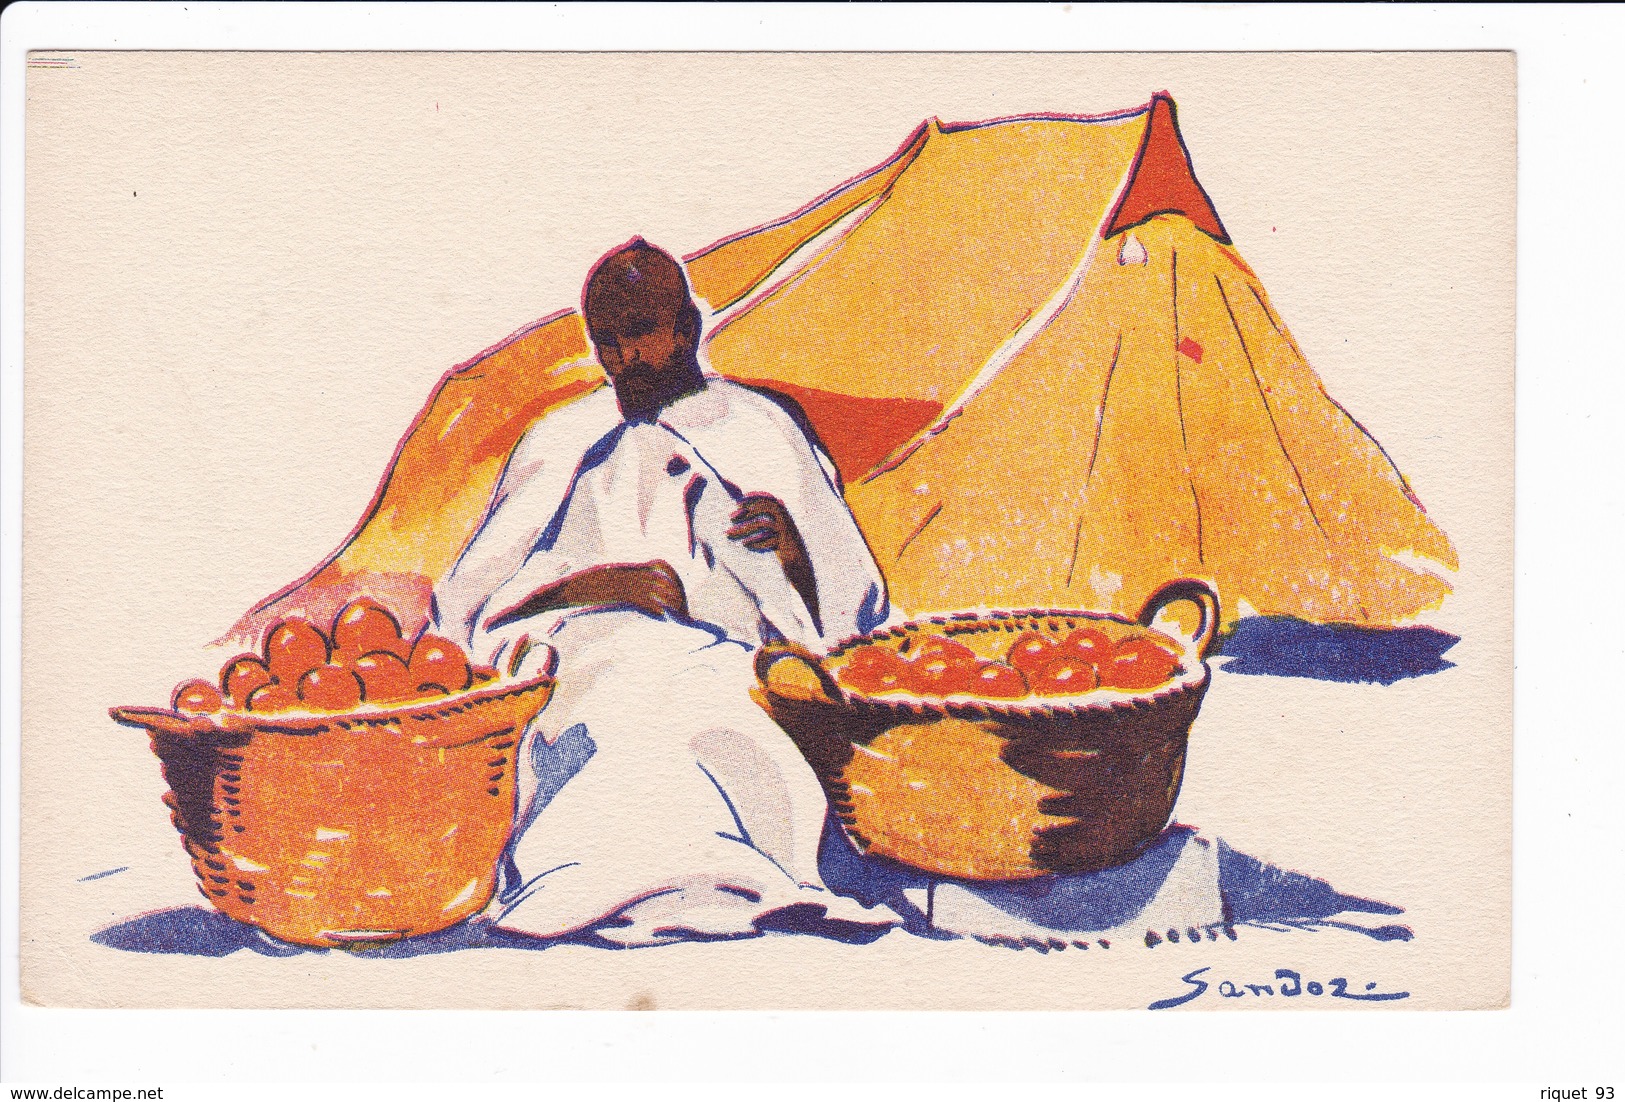 Lot 19 cp-Dessins signés Sandoz représentant des scènes de vie Nord-Africaines. Editée par la Cie Gle Transatlantique